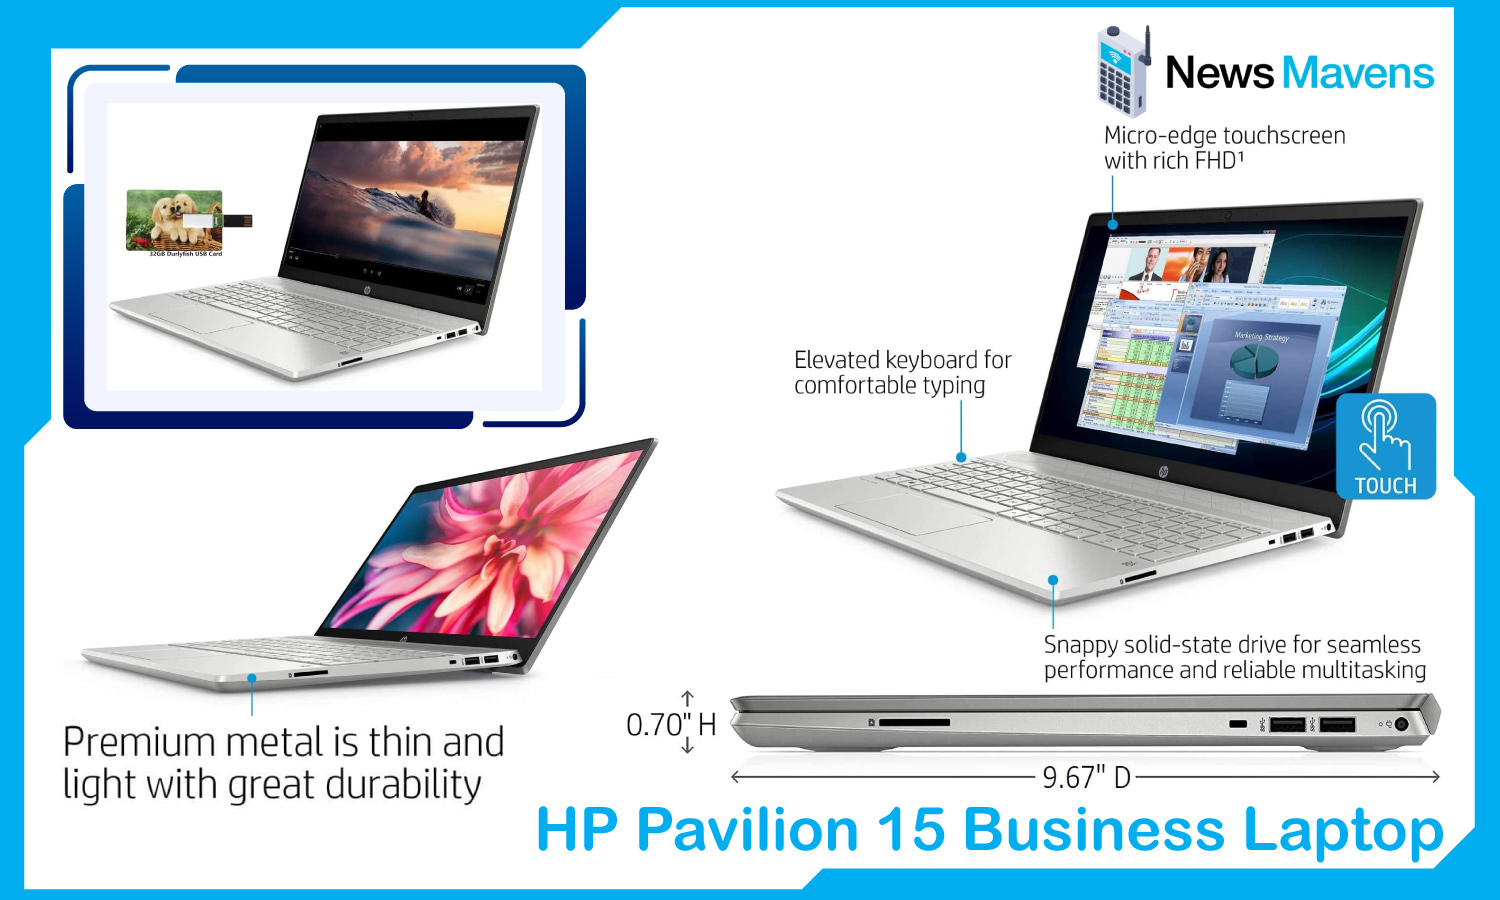 HP Pavilion 15 Business Laptop